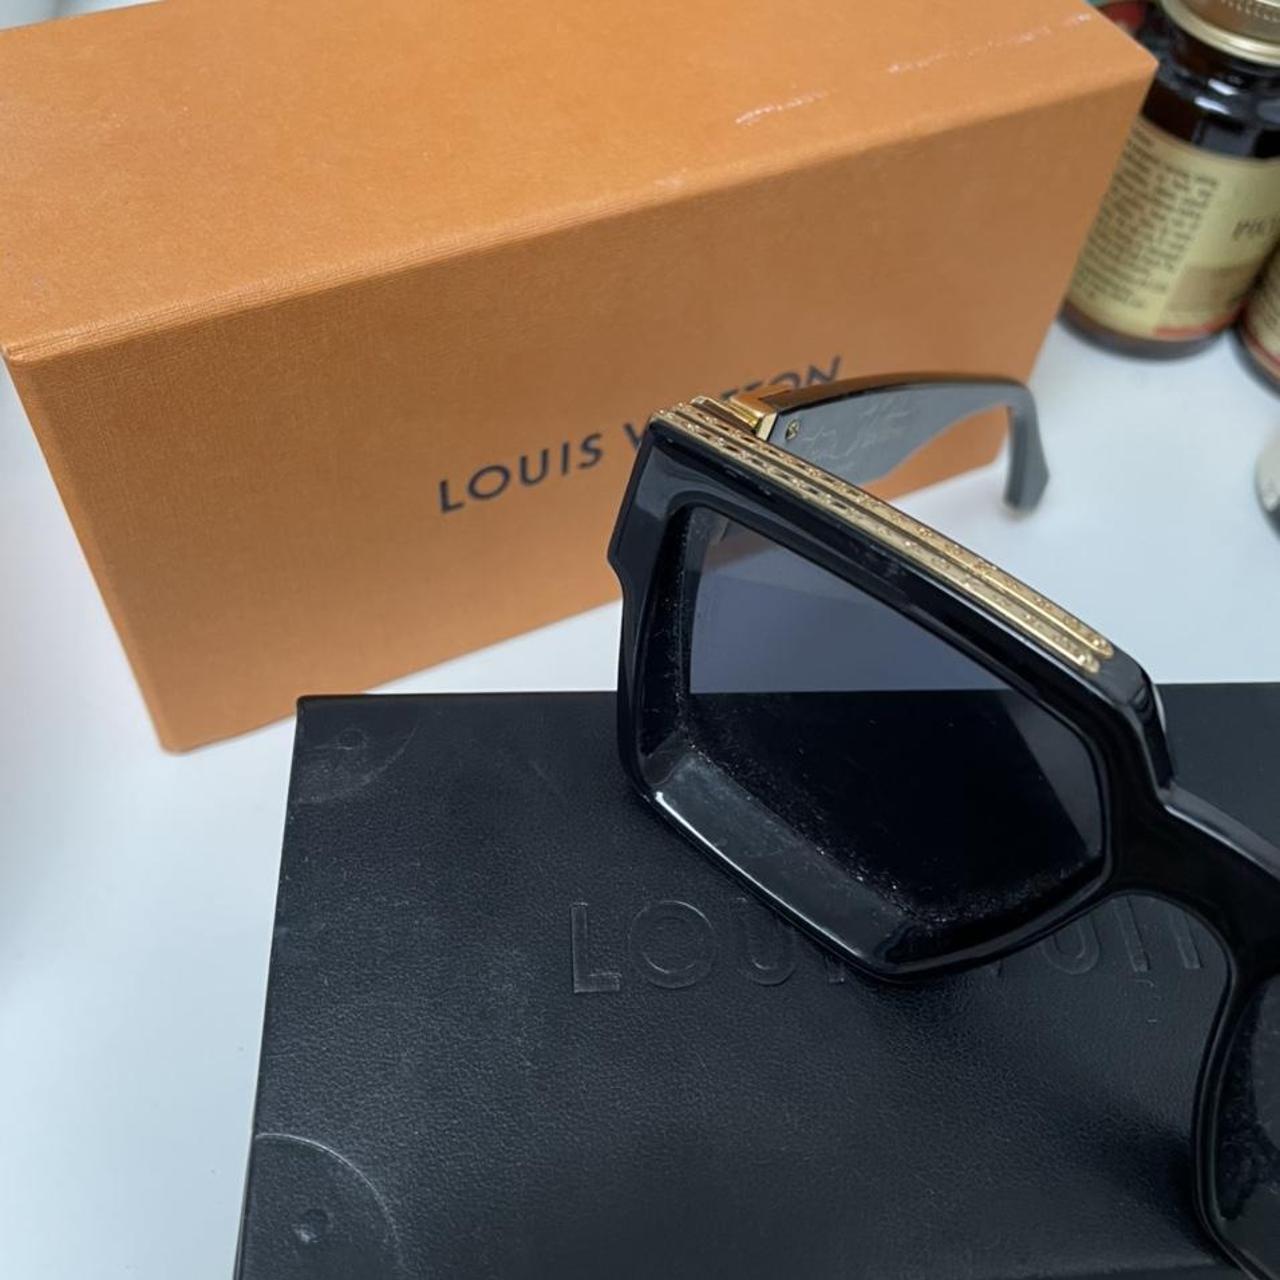 Louis Vuitton 1.1 Millionaires Sunglasses Red Like - Depop